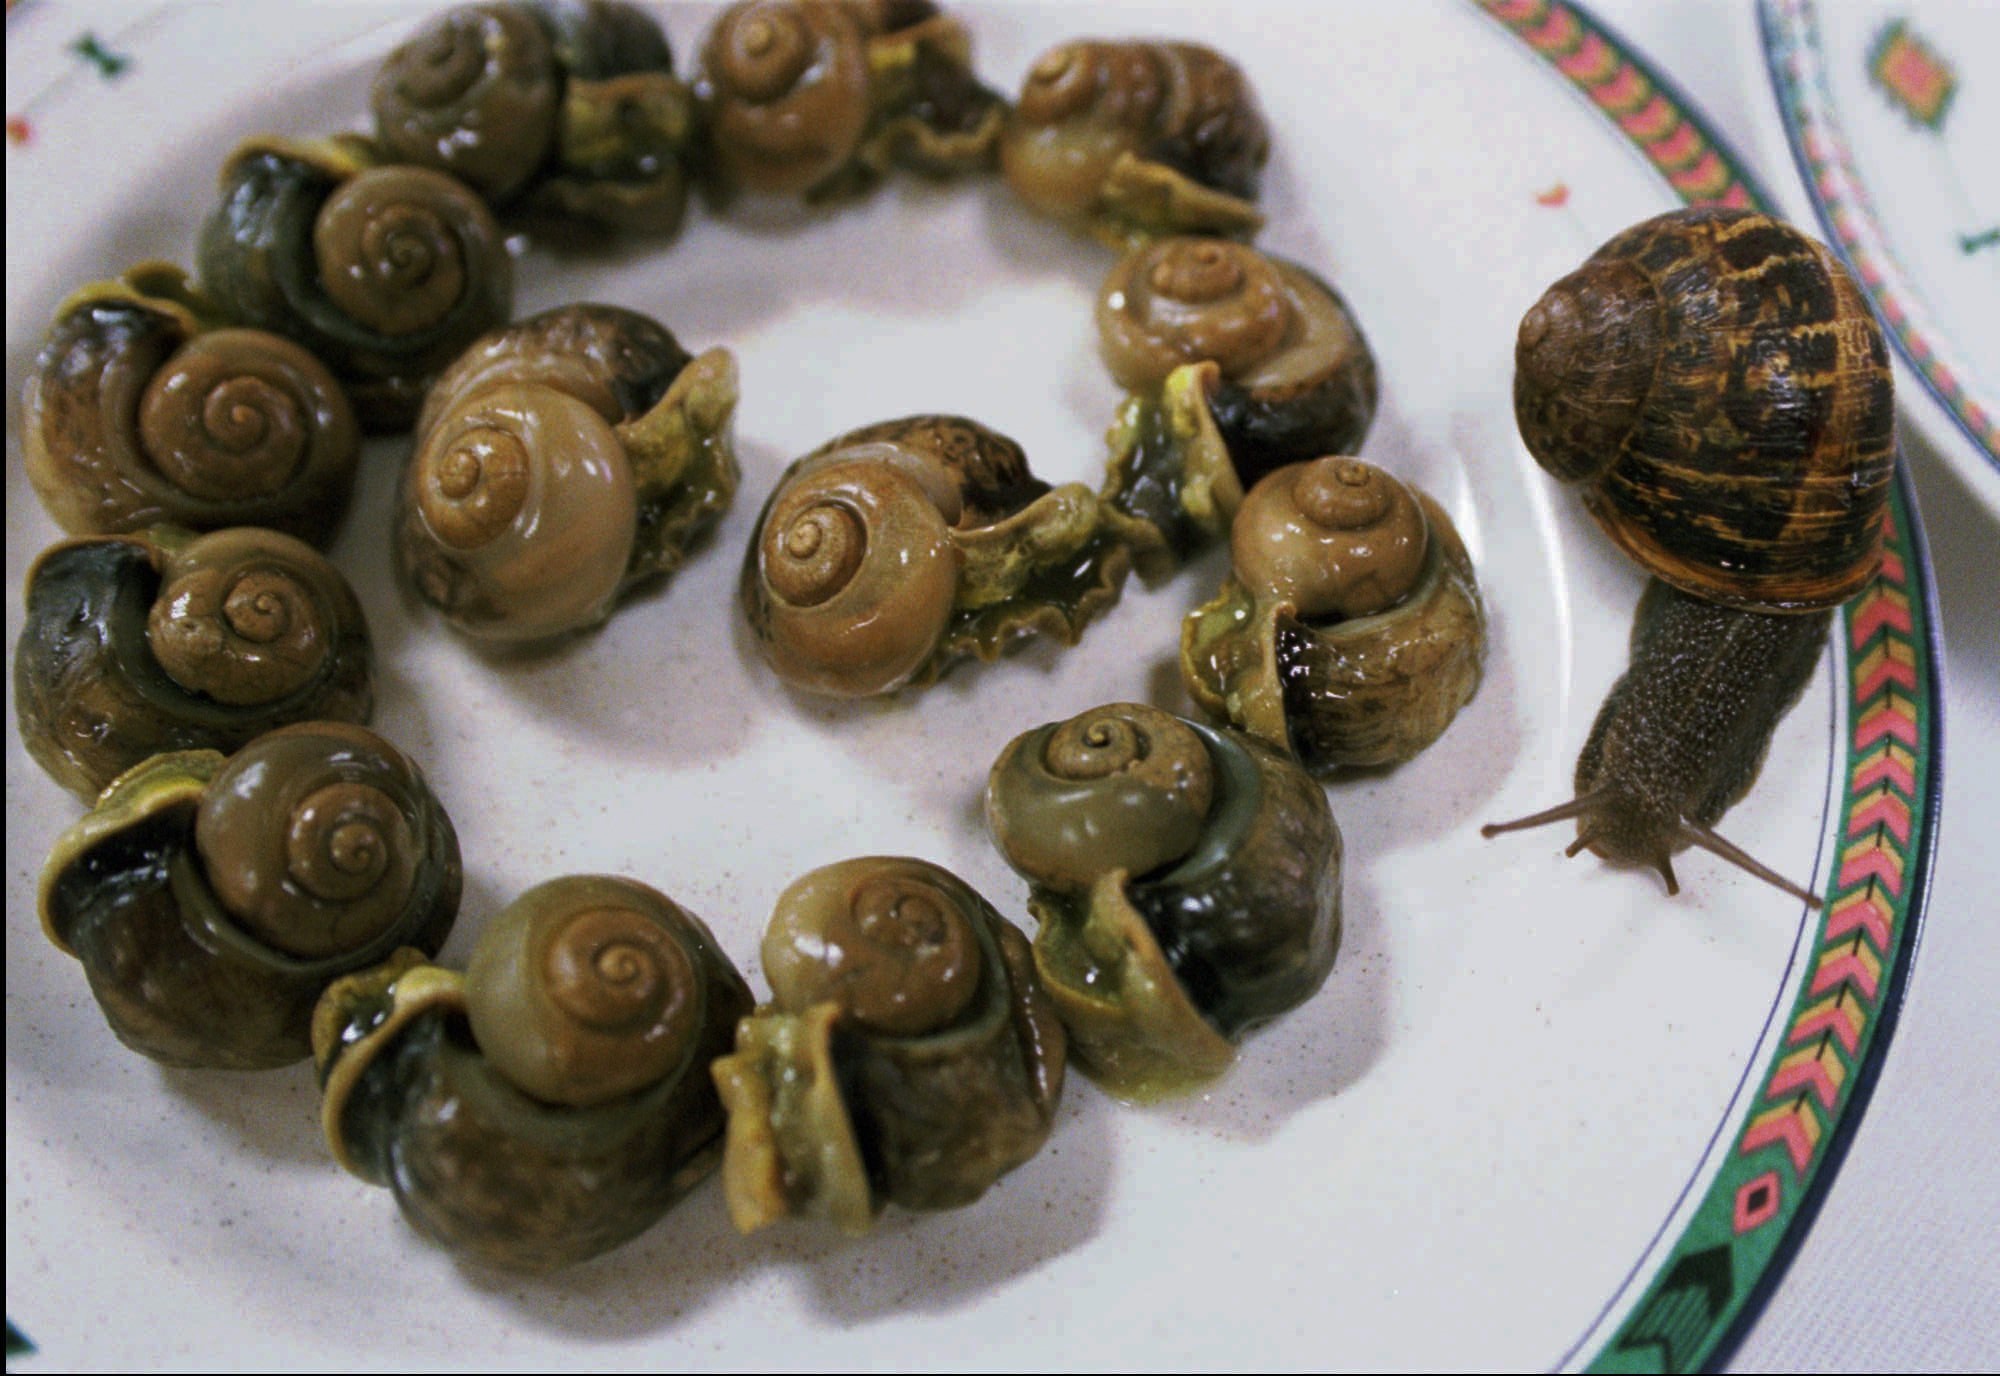 Snails on plate of escargot